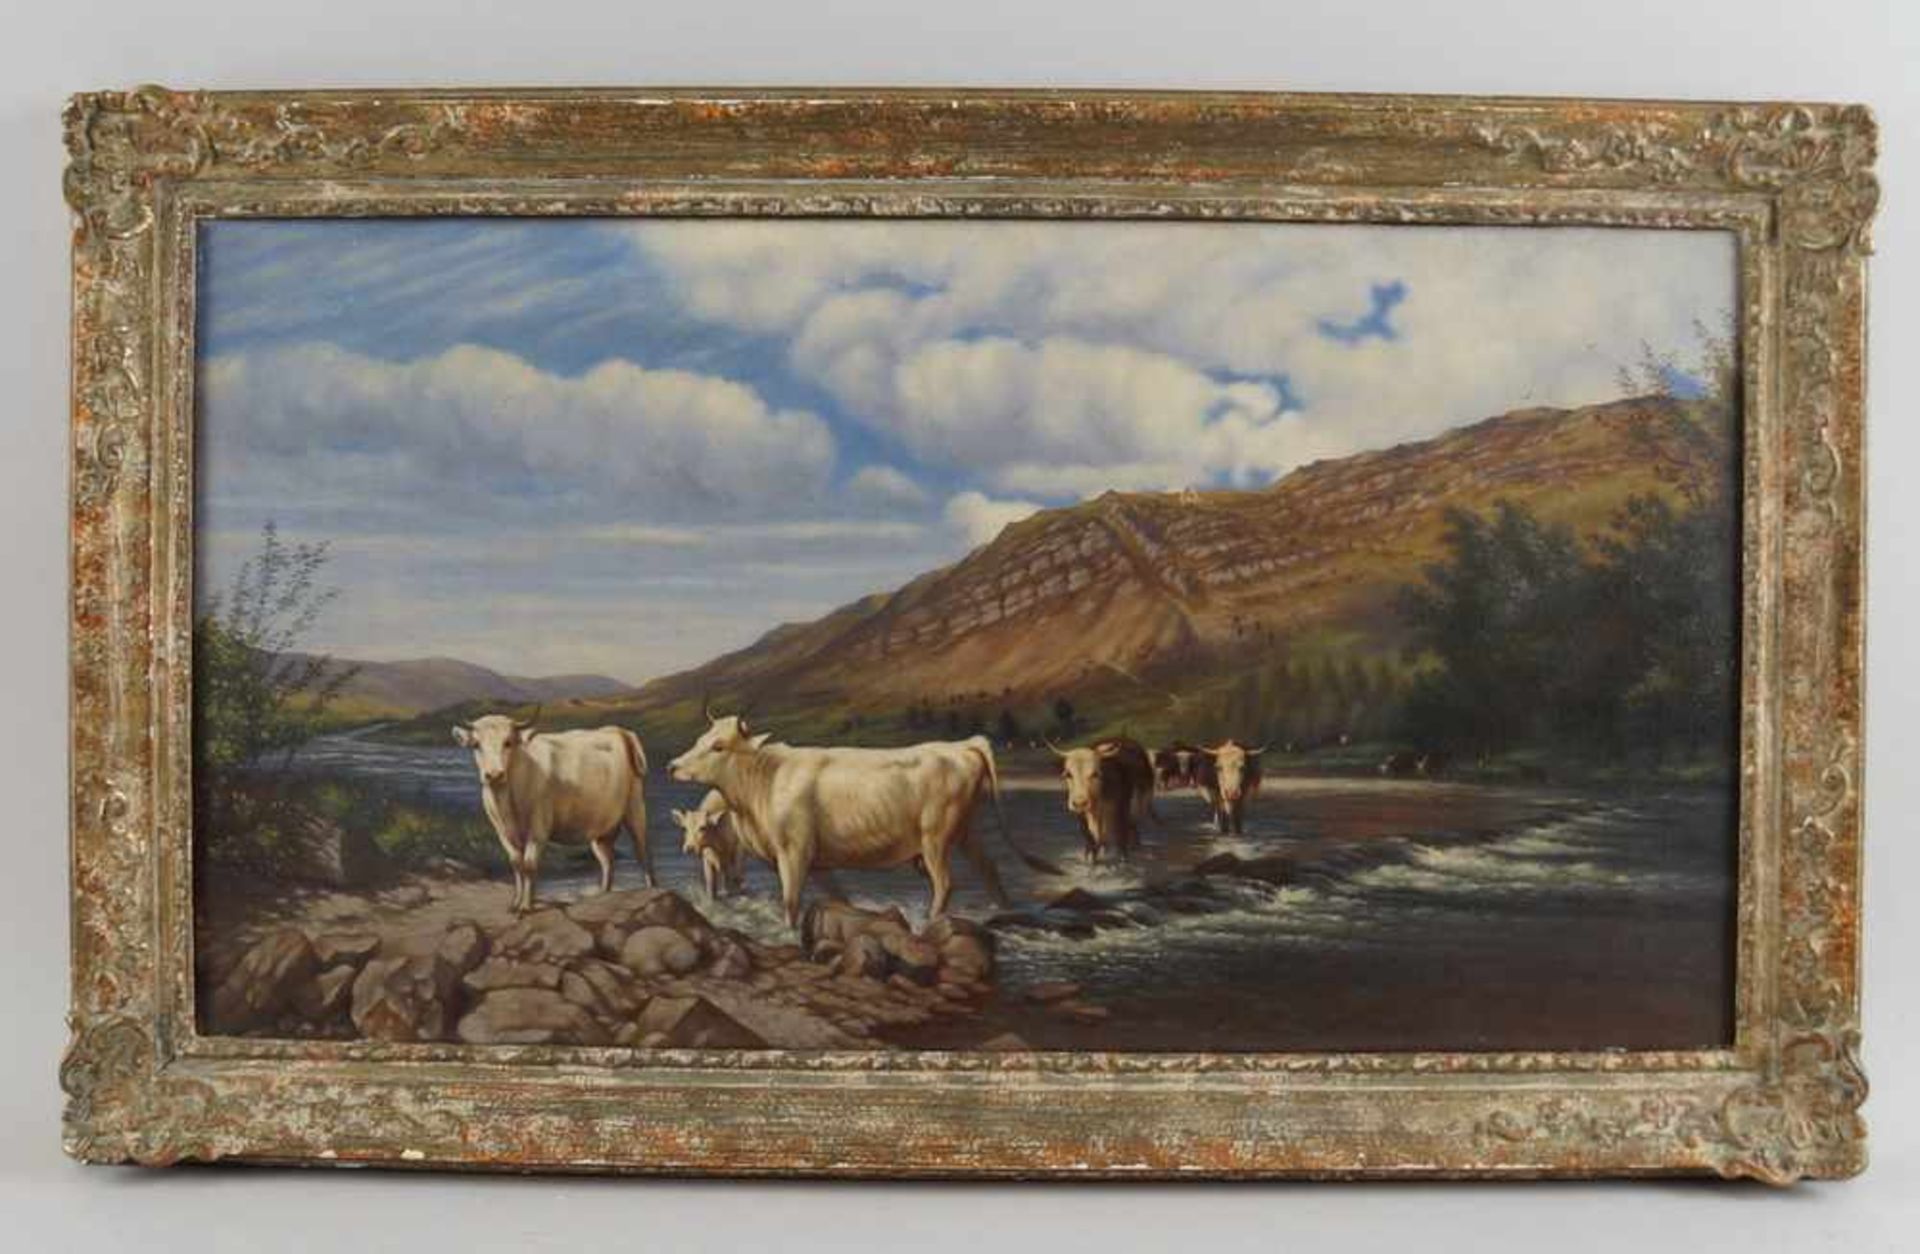 Kühe am Fluss, auf der Rückseite bezeichnet, Öl auf Leinwand, gerahmt, besch., 45x76cm- - -24.00 %